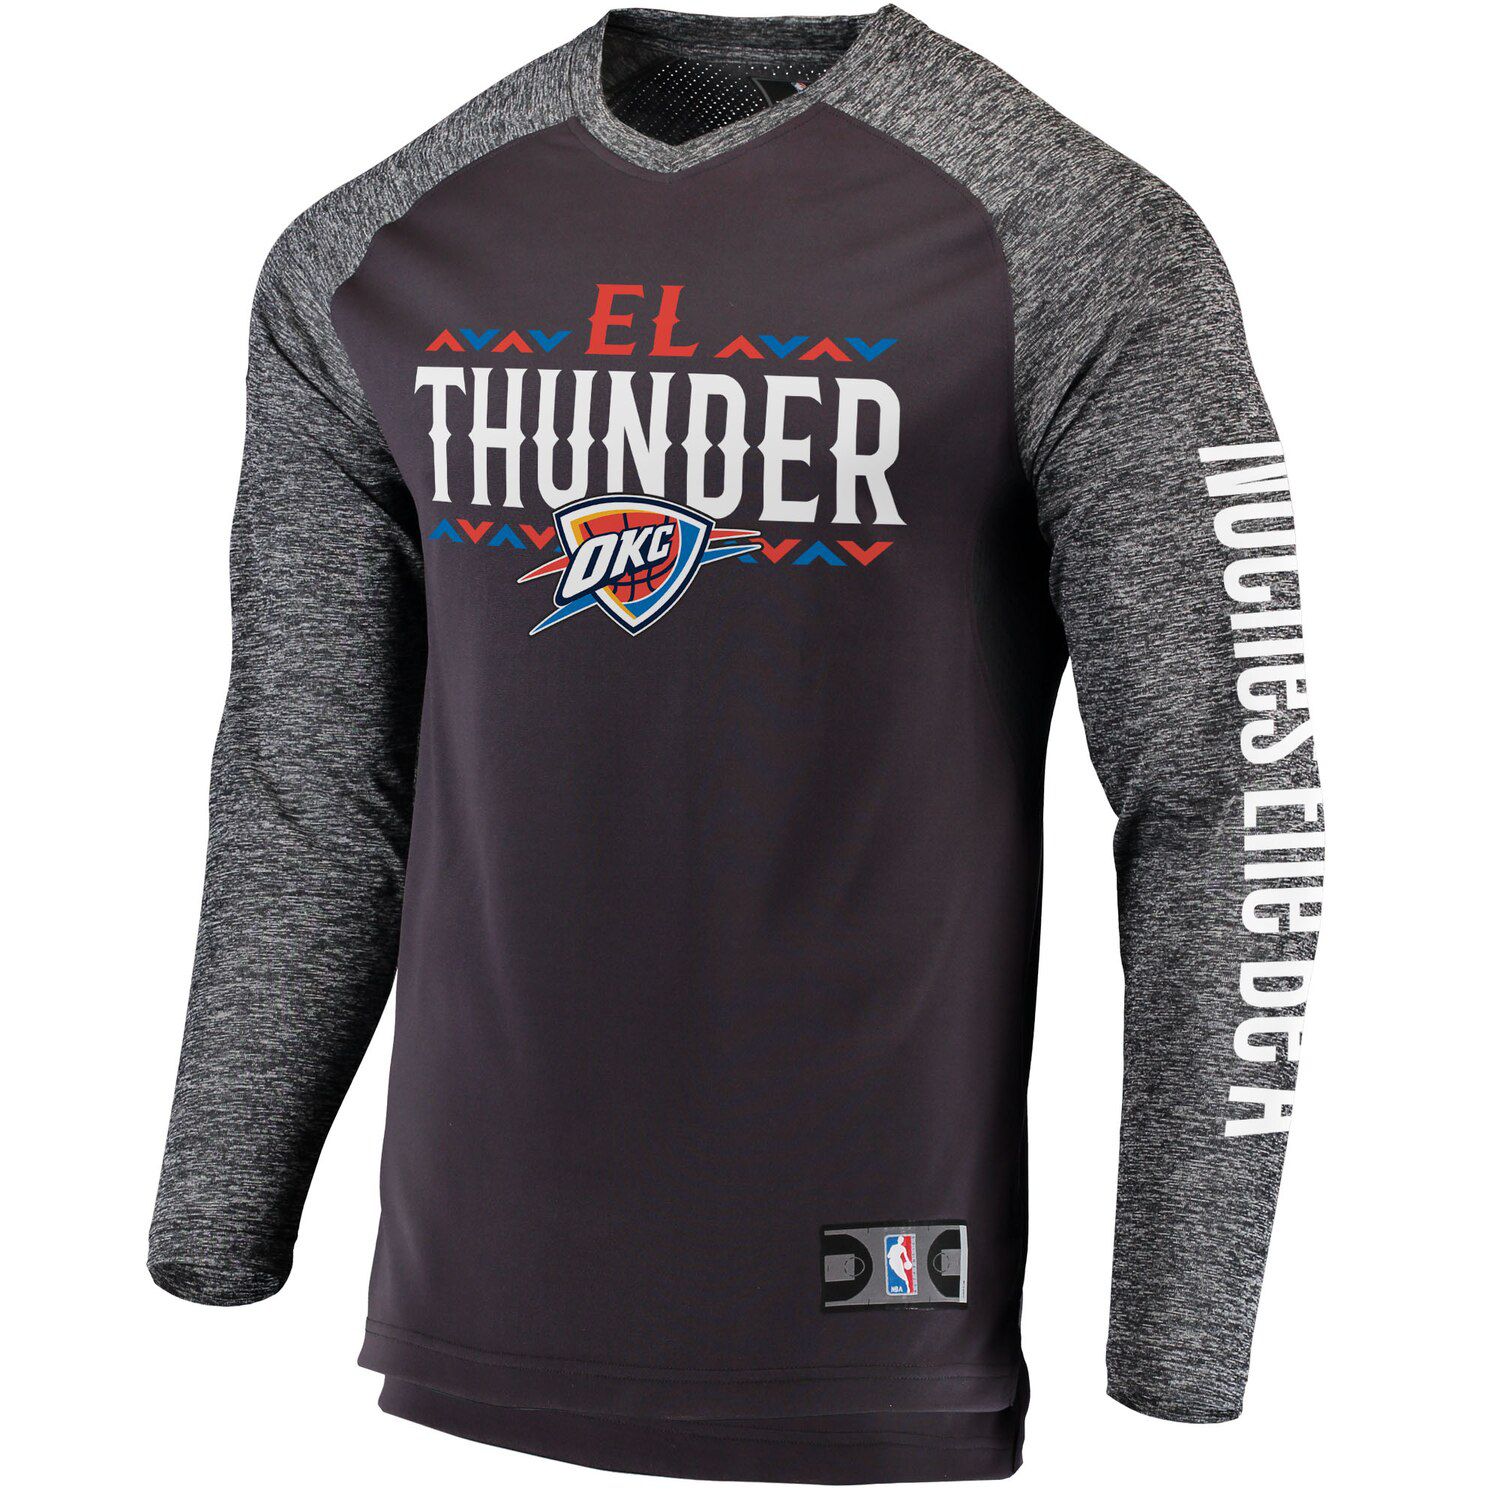 thunder gray jersey